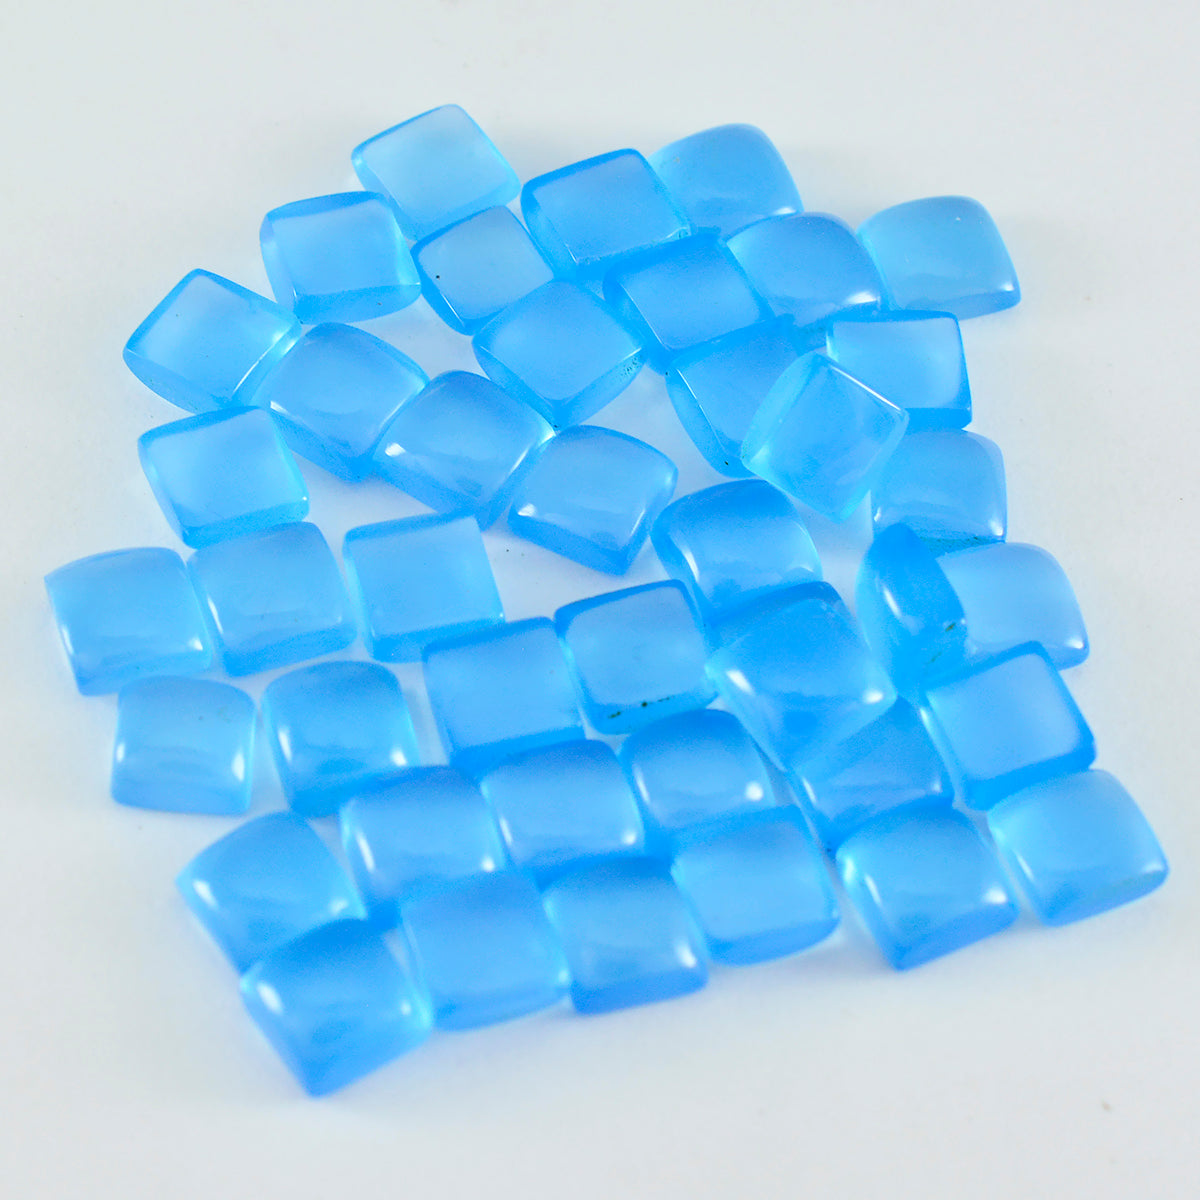 Riyogems 1 pc cabochon de calcédoine bleue 5x5 mm forme carrée belle qualité pierre précieuse en vrac